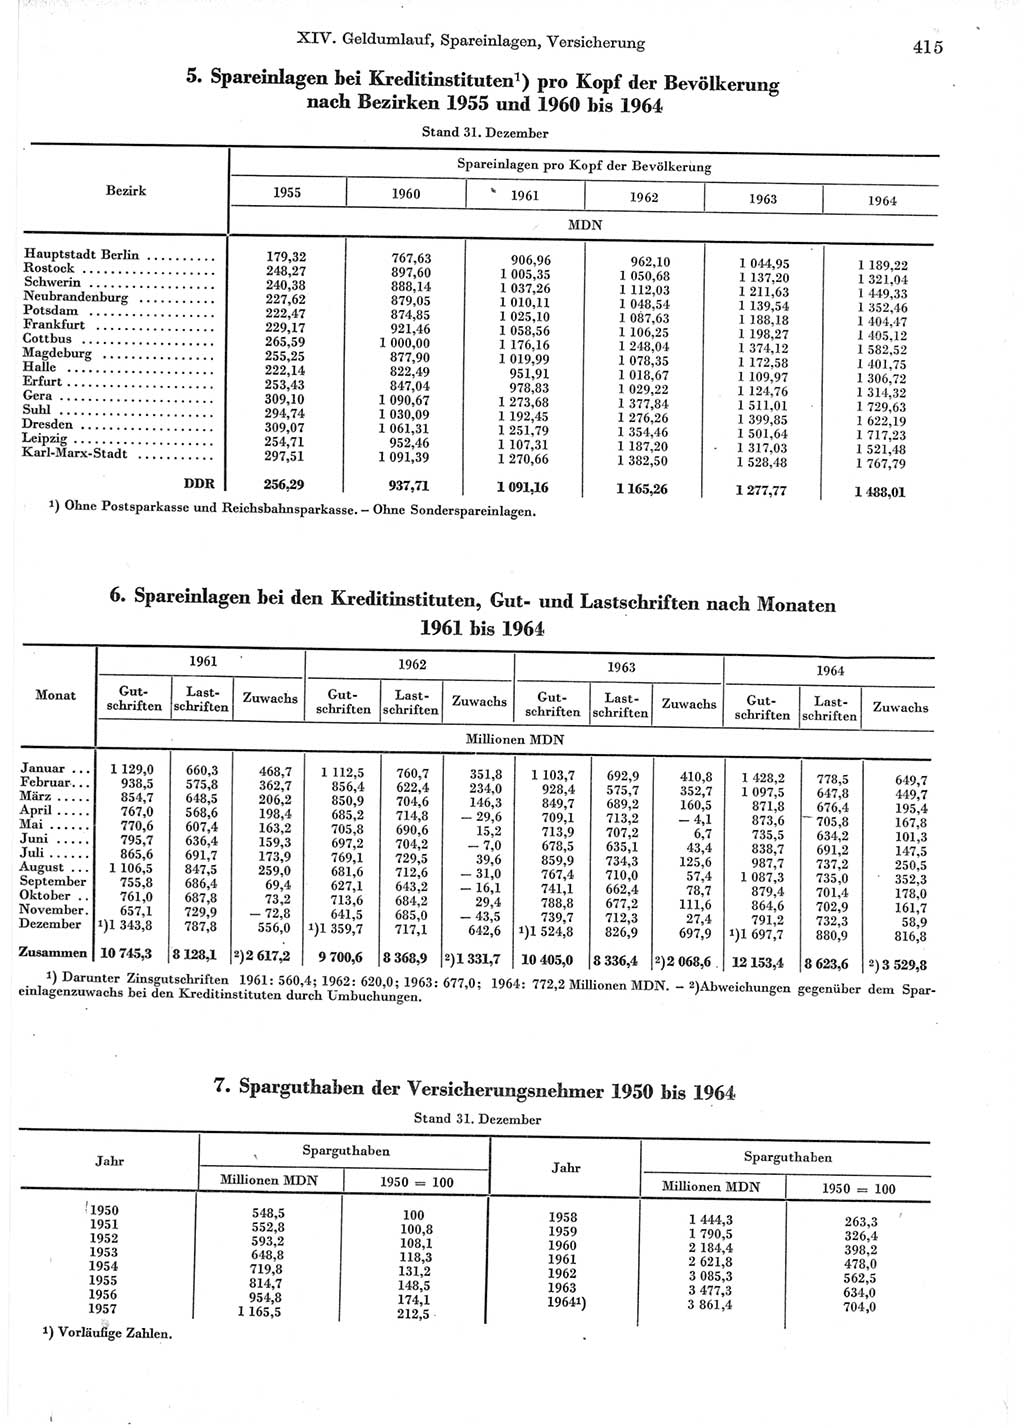 Statistisches Jahrbuch der Deutschen Demokratischen Republik (DDR) 1965, Seite 415 (Stat. Jb. DDR 1965, S. 415)